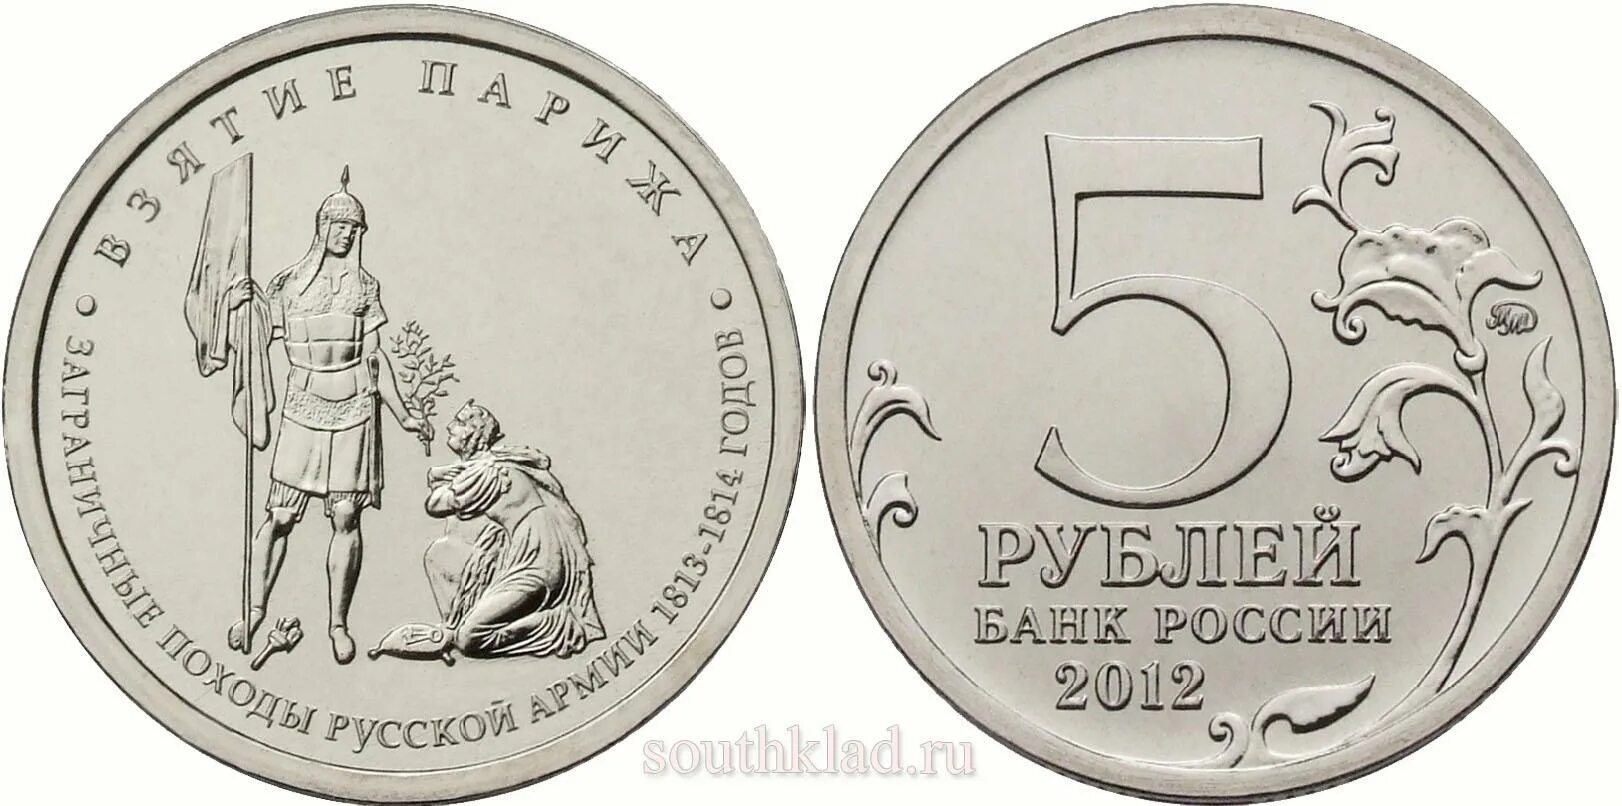 Монета 5 рублей взятие Парижа. 5 Рублей взятие Парижа. 5 Рублевая монета 2012 года взятия Парижа. Монета взятие Парижа.